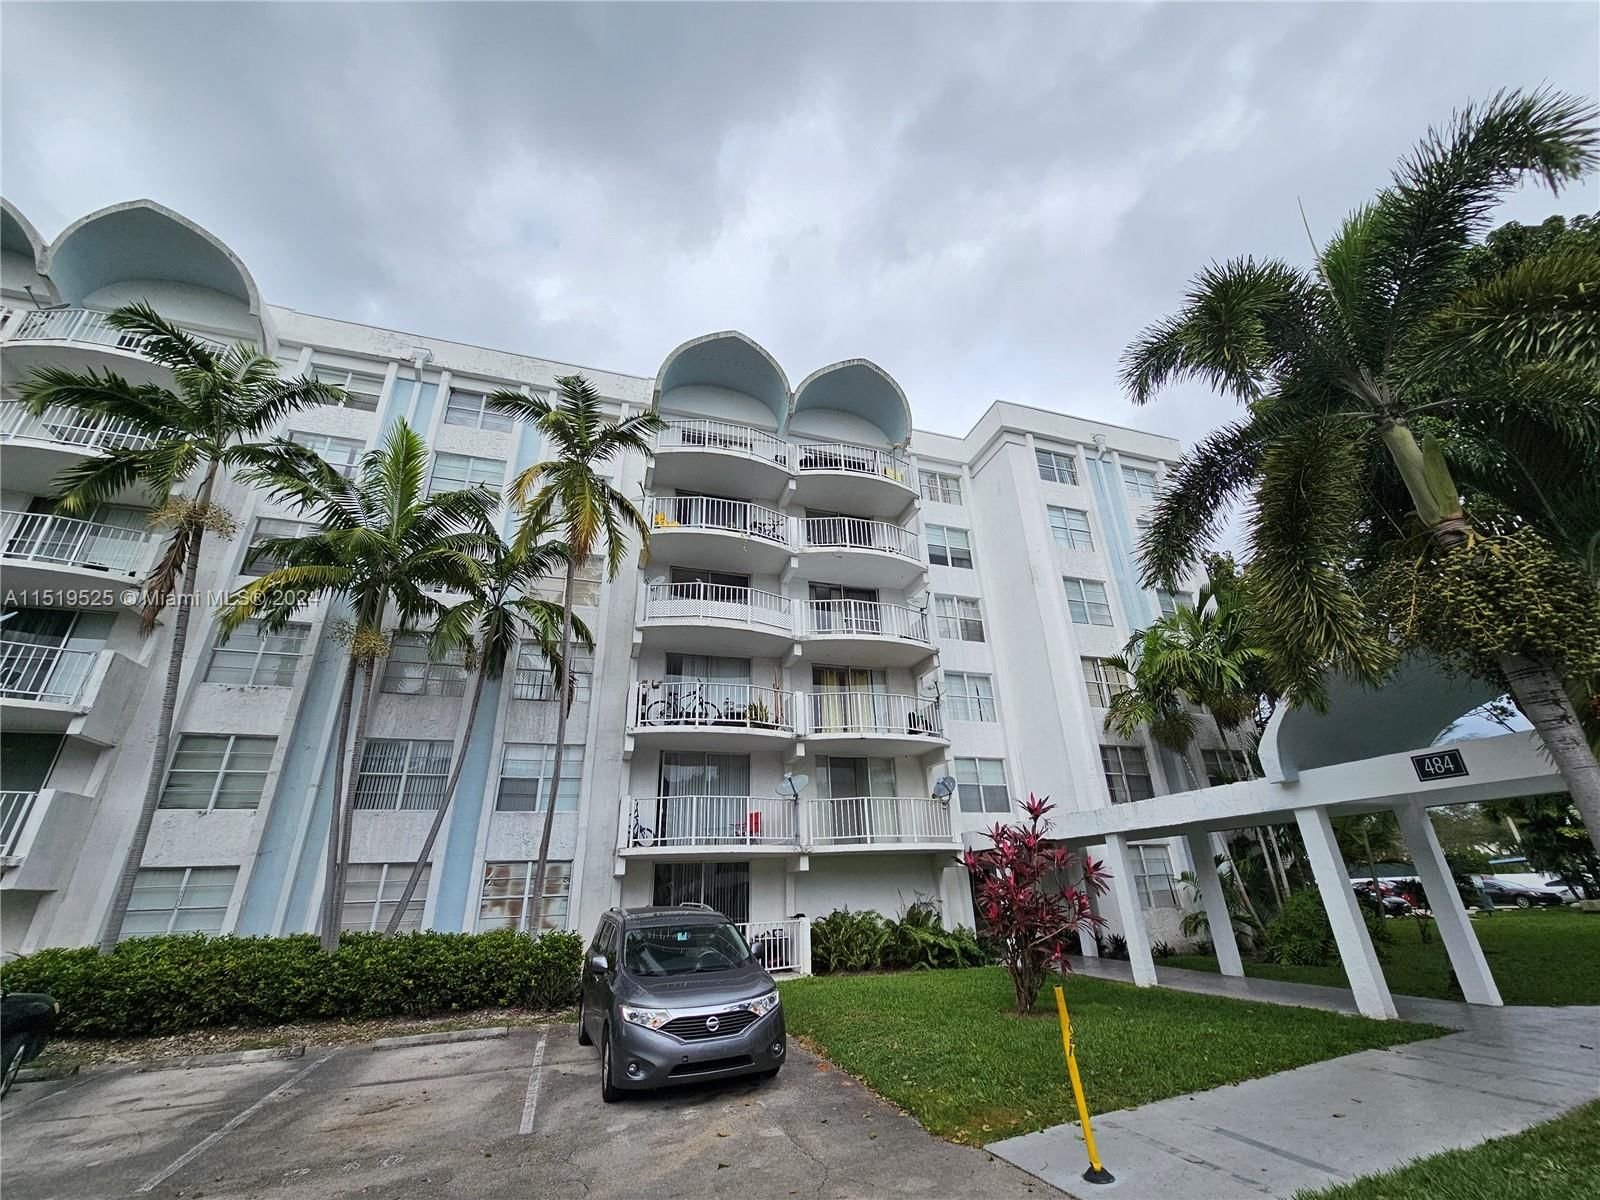 Real estate property located at 484 165th St Rd A-414, Miami-Dade County, MONTECARLO CONDO, Miami, FL